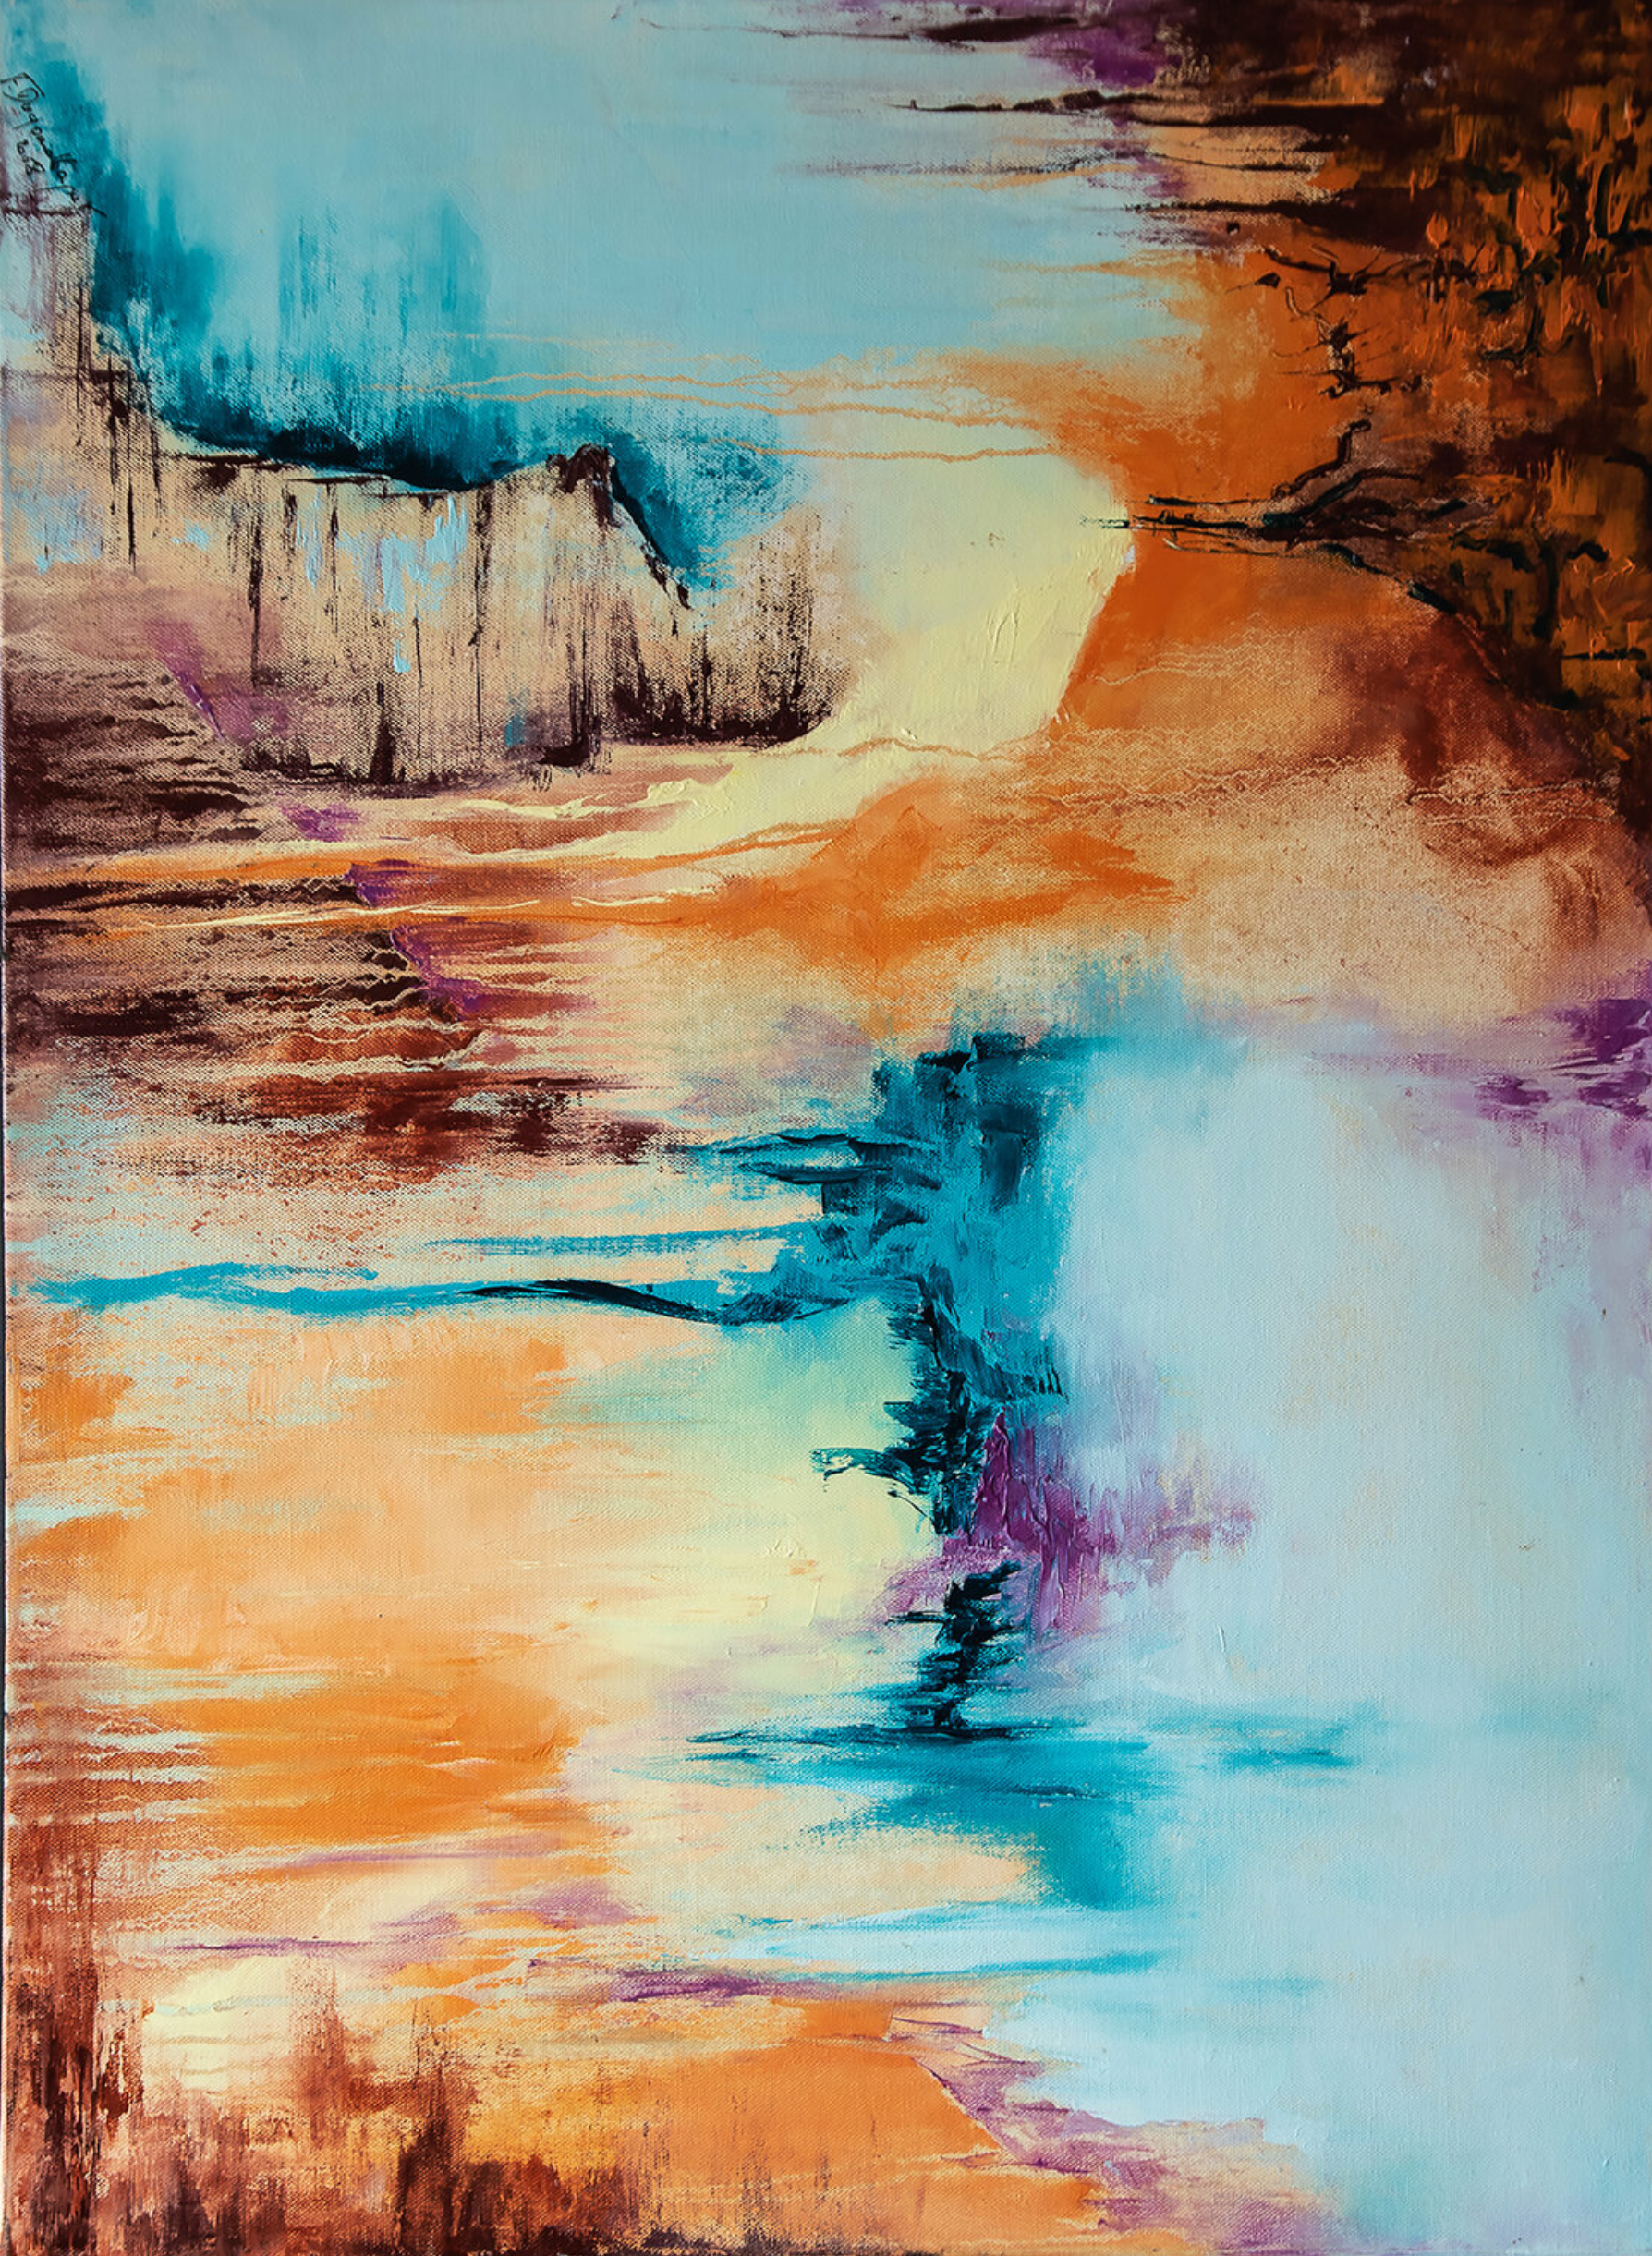 El cuadro abstracto "Entre-Soi" de Françoise Dugourd-Caput muestra la abstracción paisajística, el aspecto de grietas y gotas en los colores de la tierra, el mar, el cielo y el calor Miseria y tranquilidad se combinan en este cuadro para crear una invitación al viaje